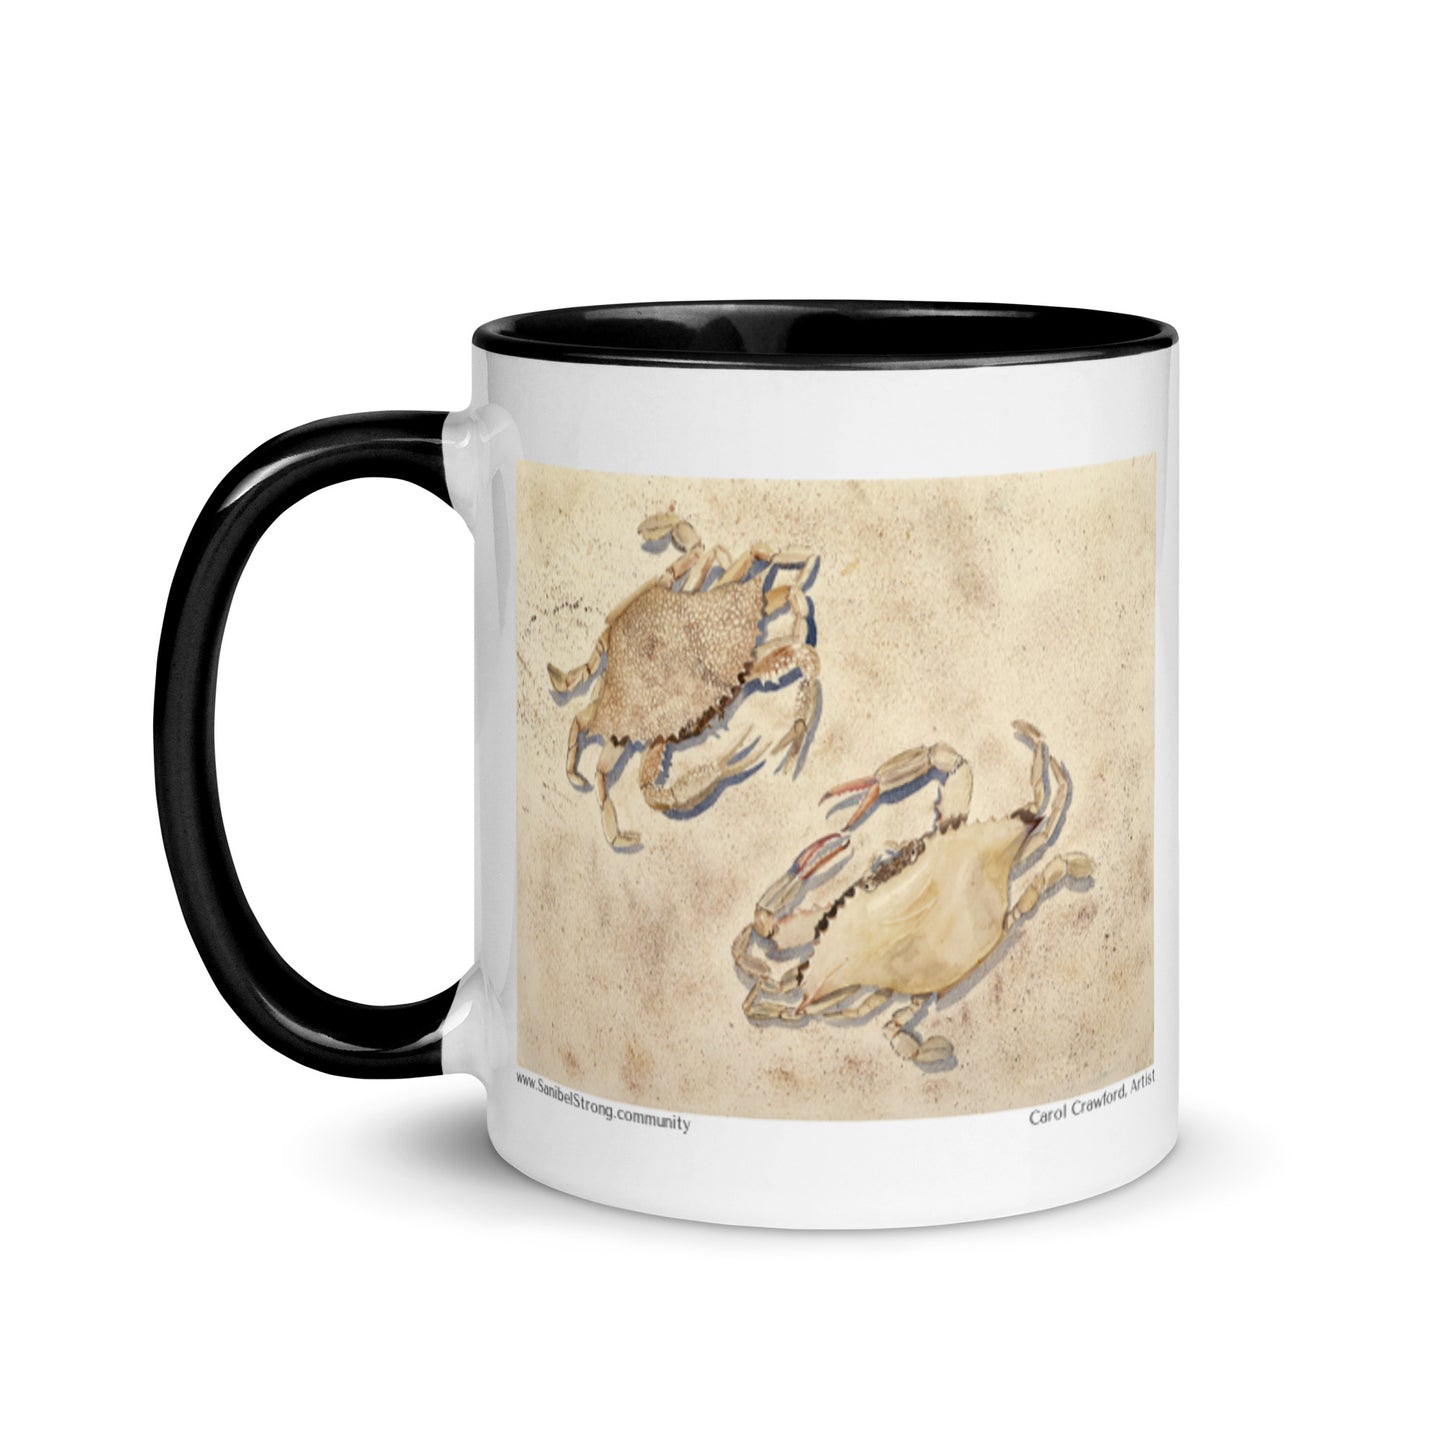 Sanibel Watercolor Crabs Mug